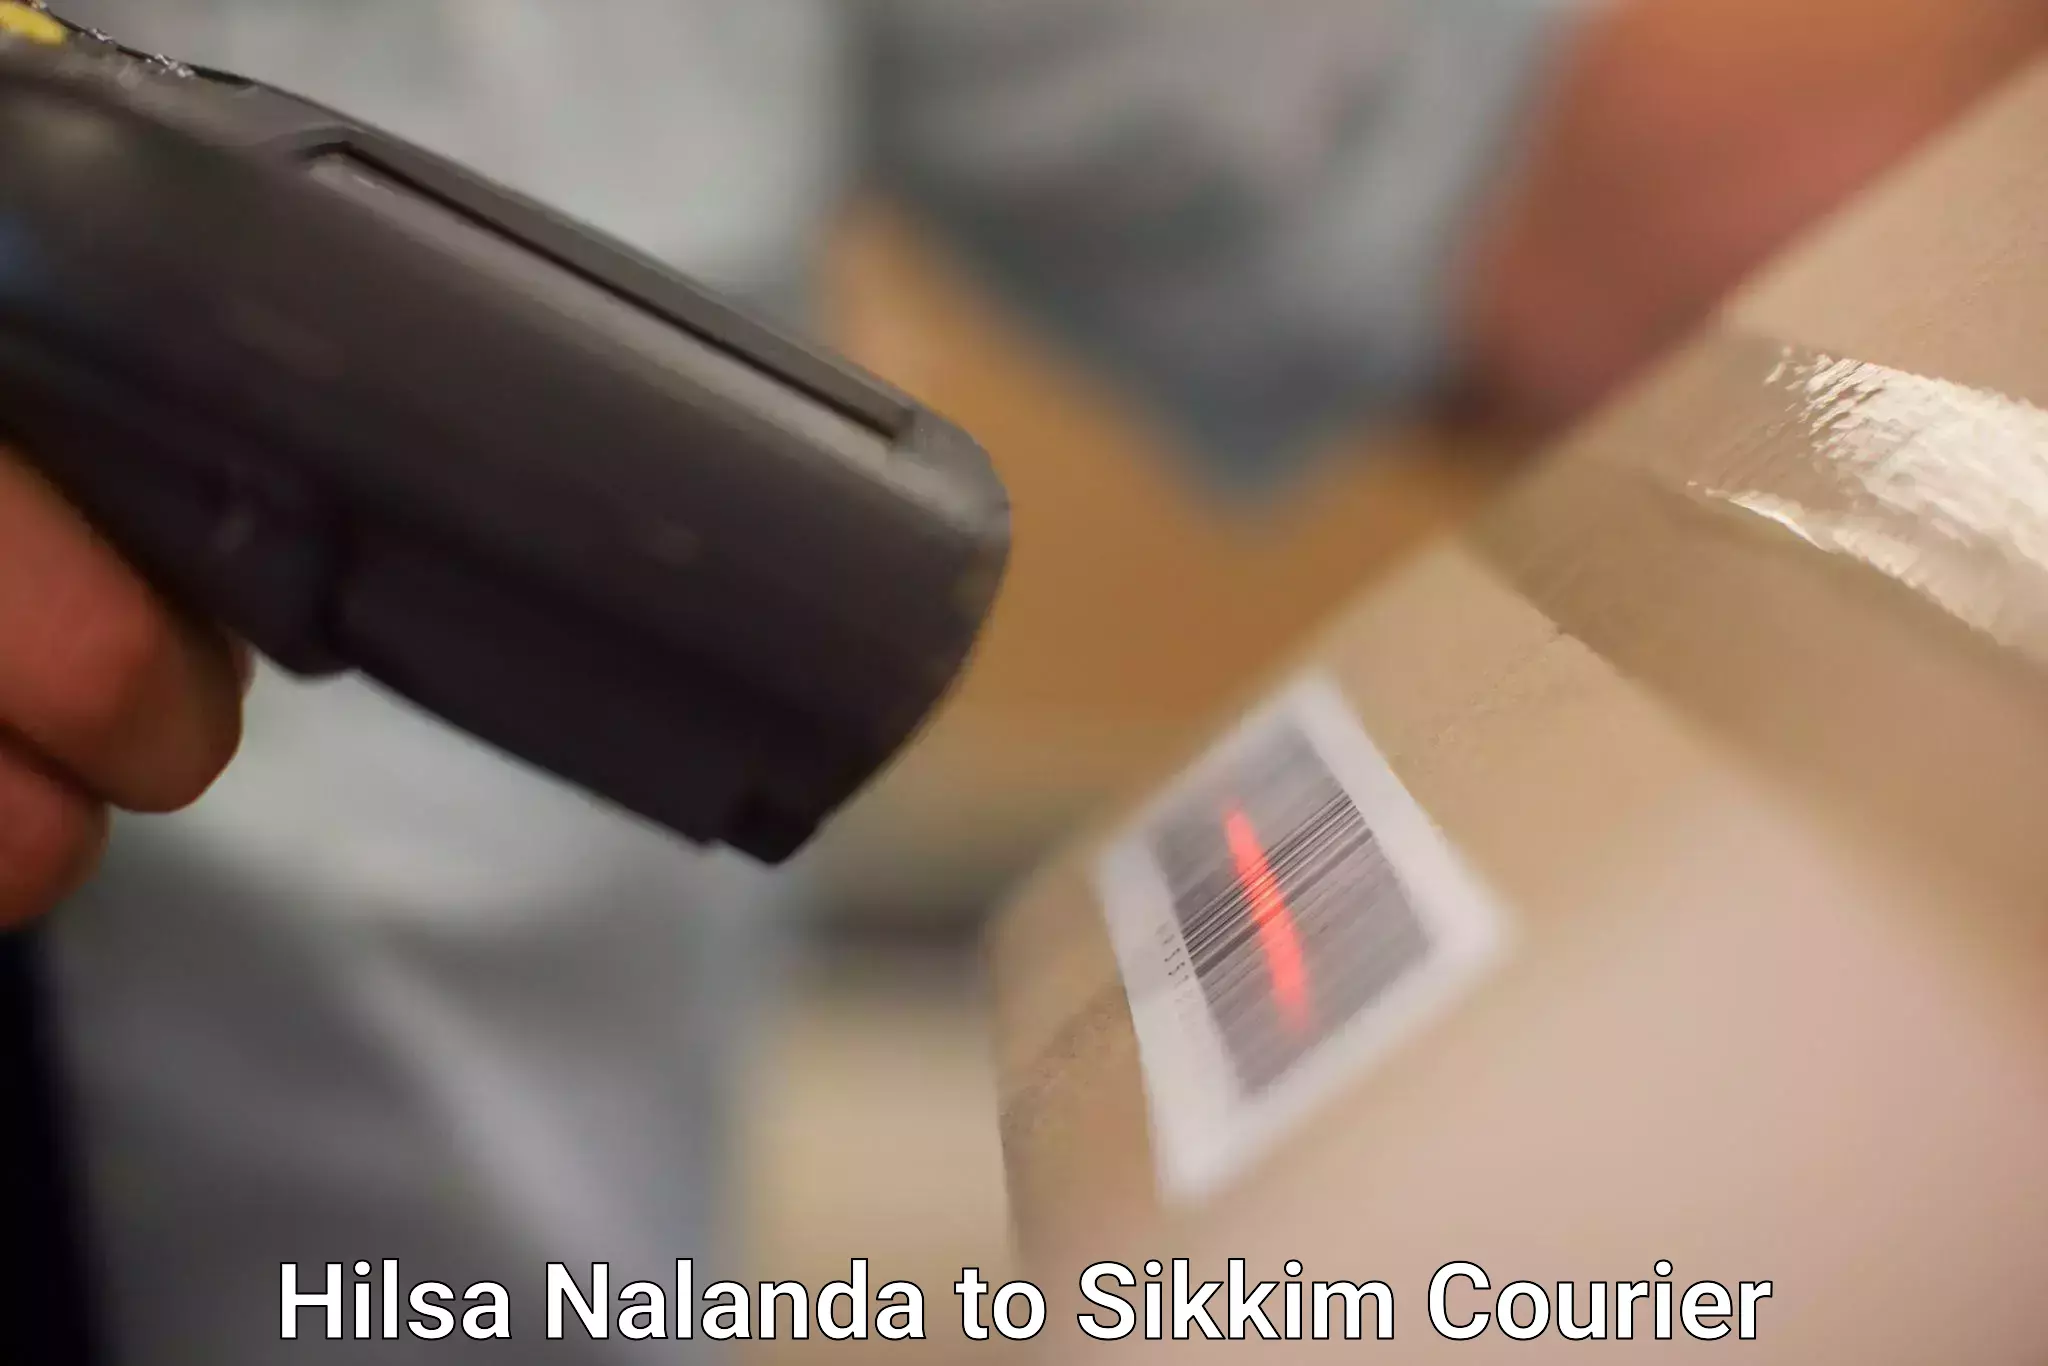 Personal courier services Hilsa Nalanda to Rangpo